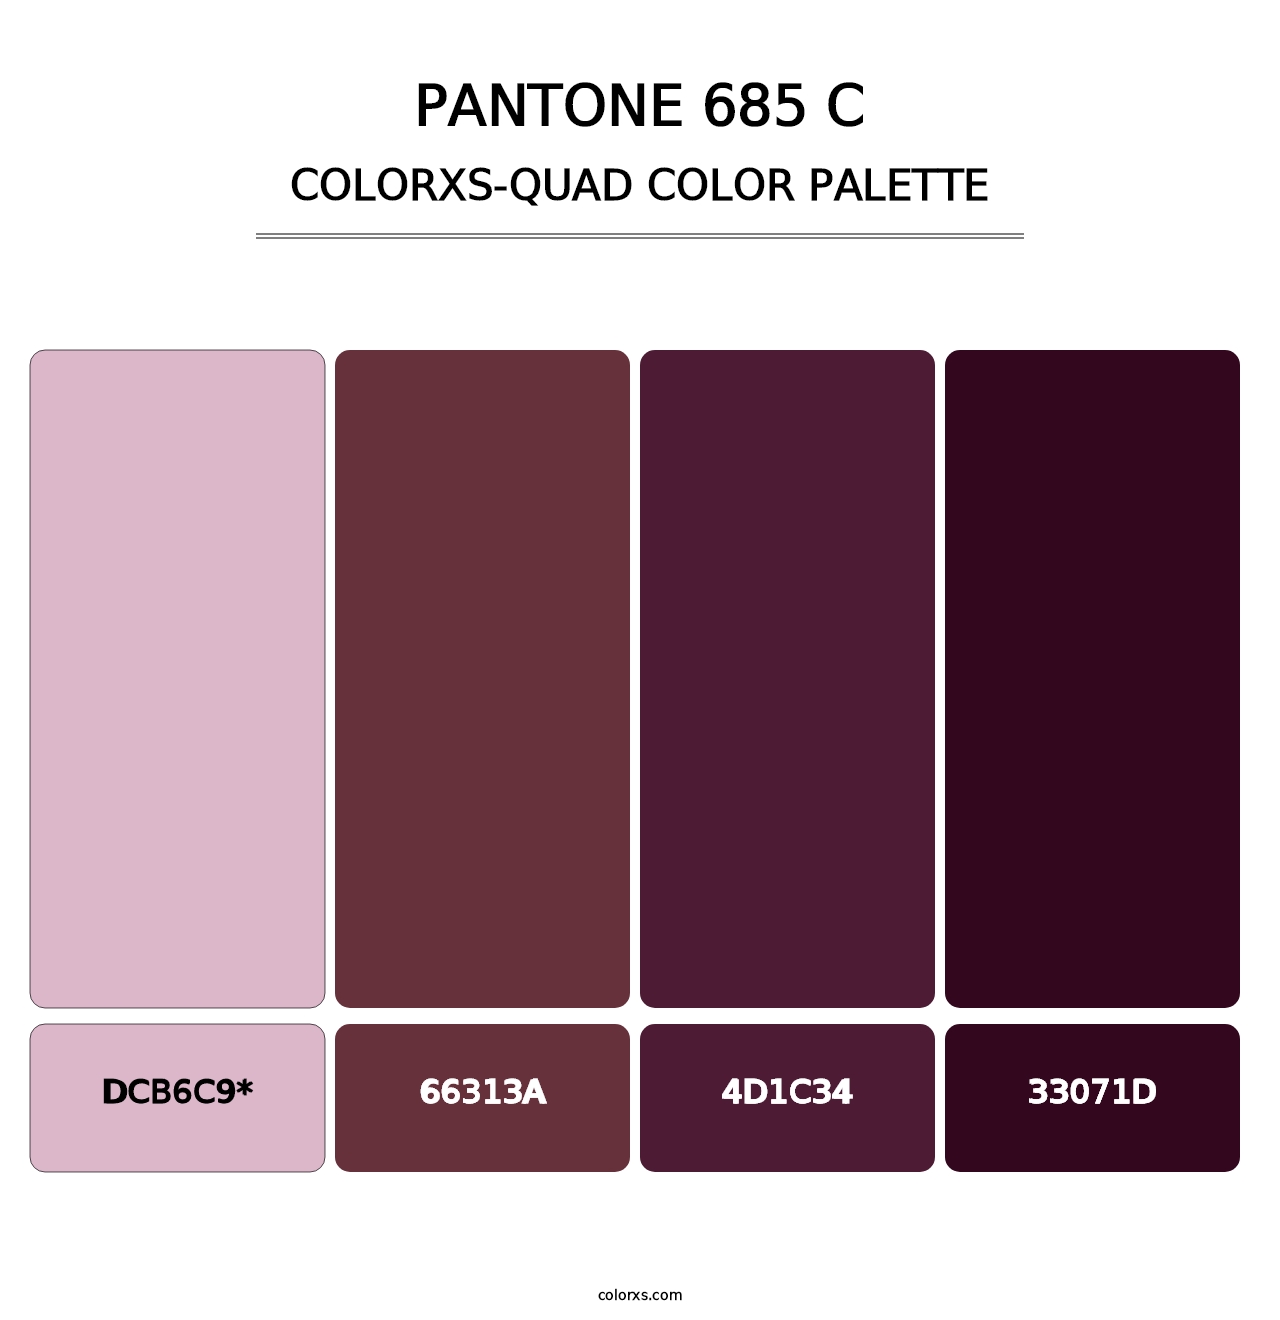 PANTONE 685 C - Colorxs Quad Palette